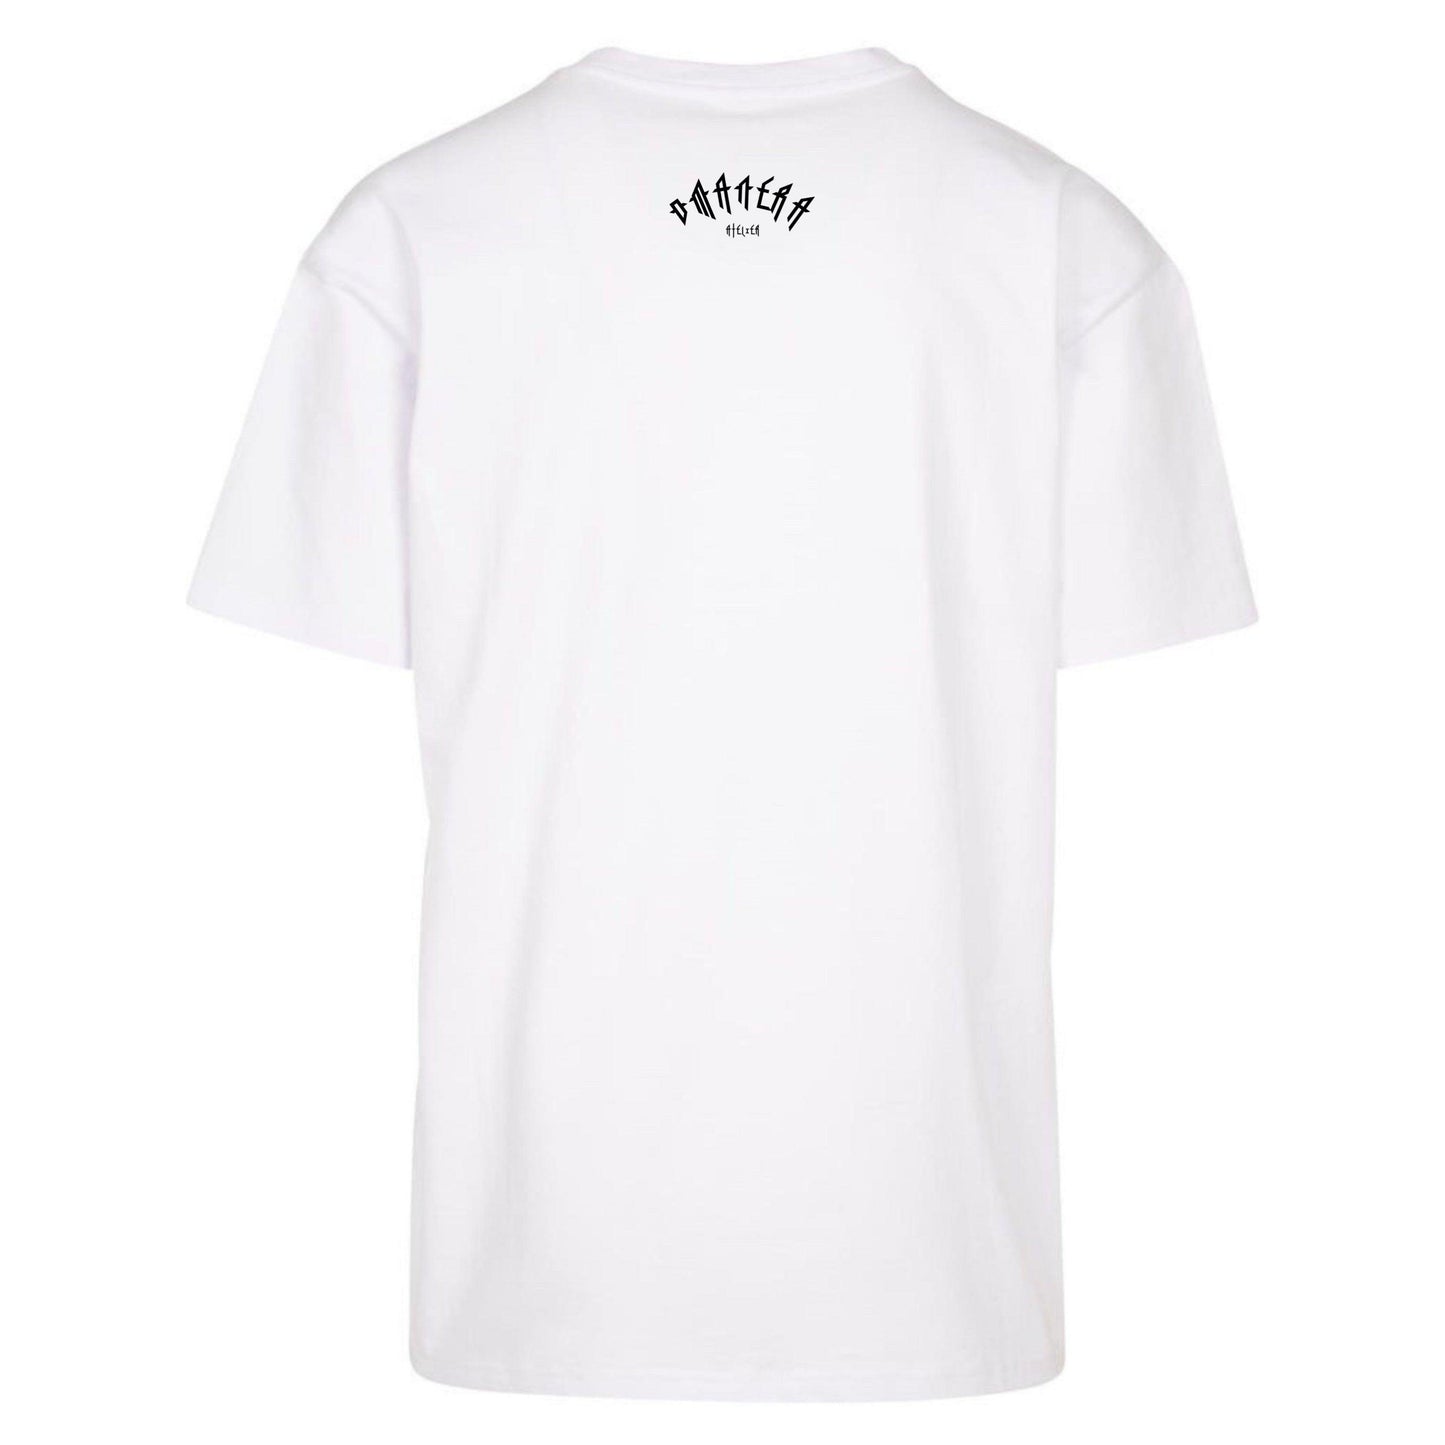 Oversize Shirt White/Black 240 g/m² - DMANERA Atelier